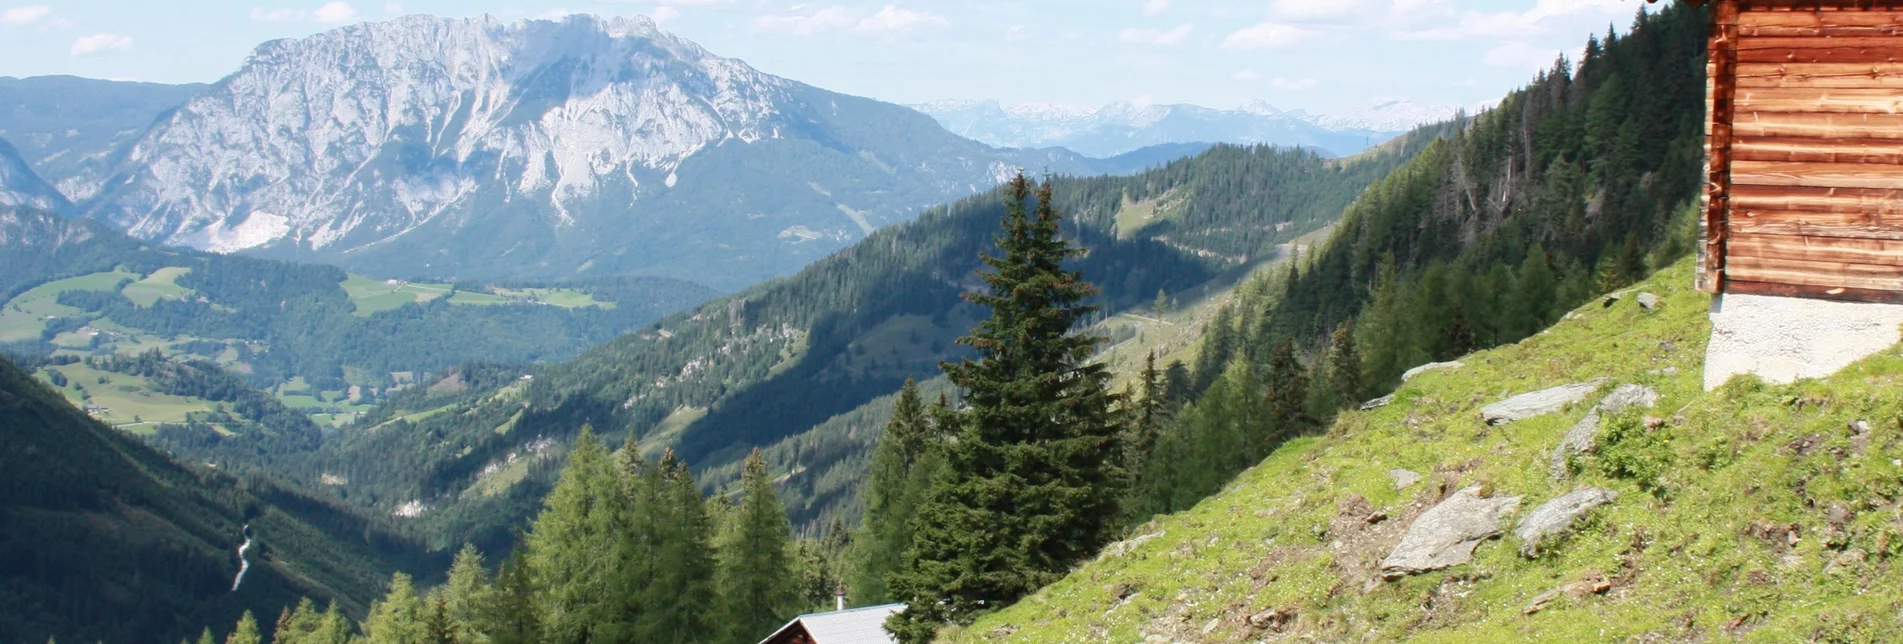 Hiking route Sattental circuit tour - Touren-Impression #1 | © Erlebnisregion Schladming-Dachstein